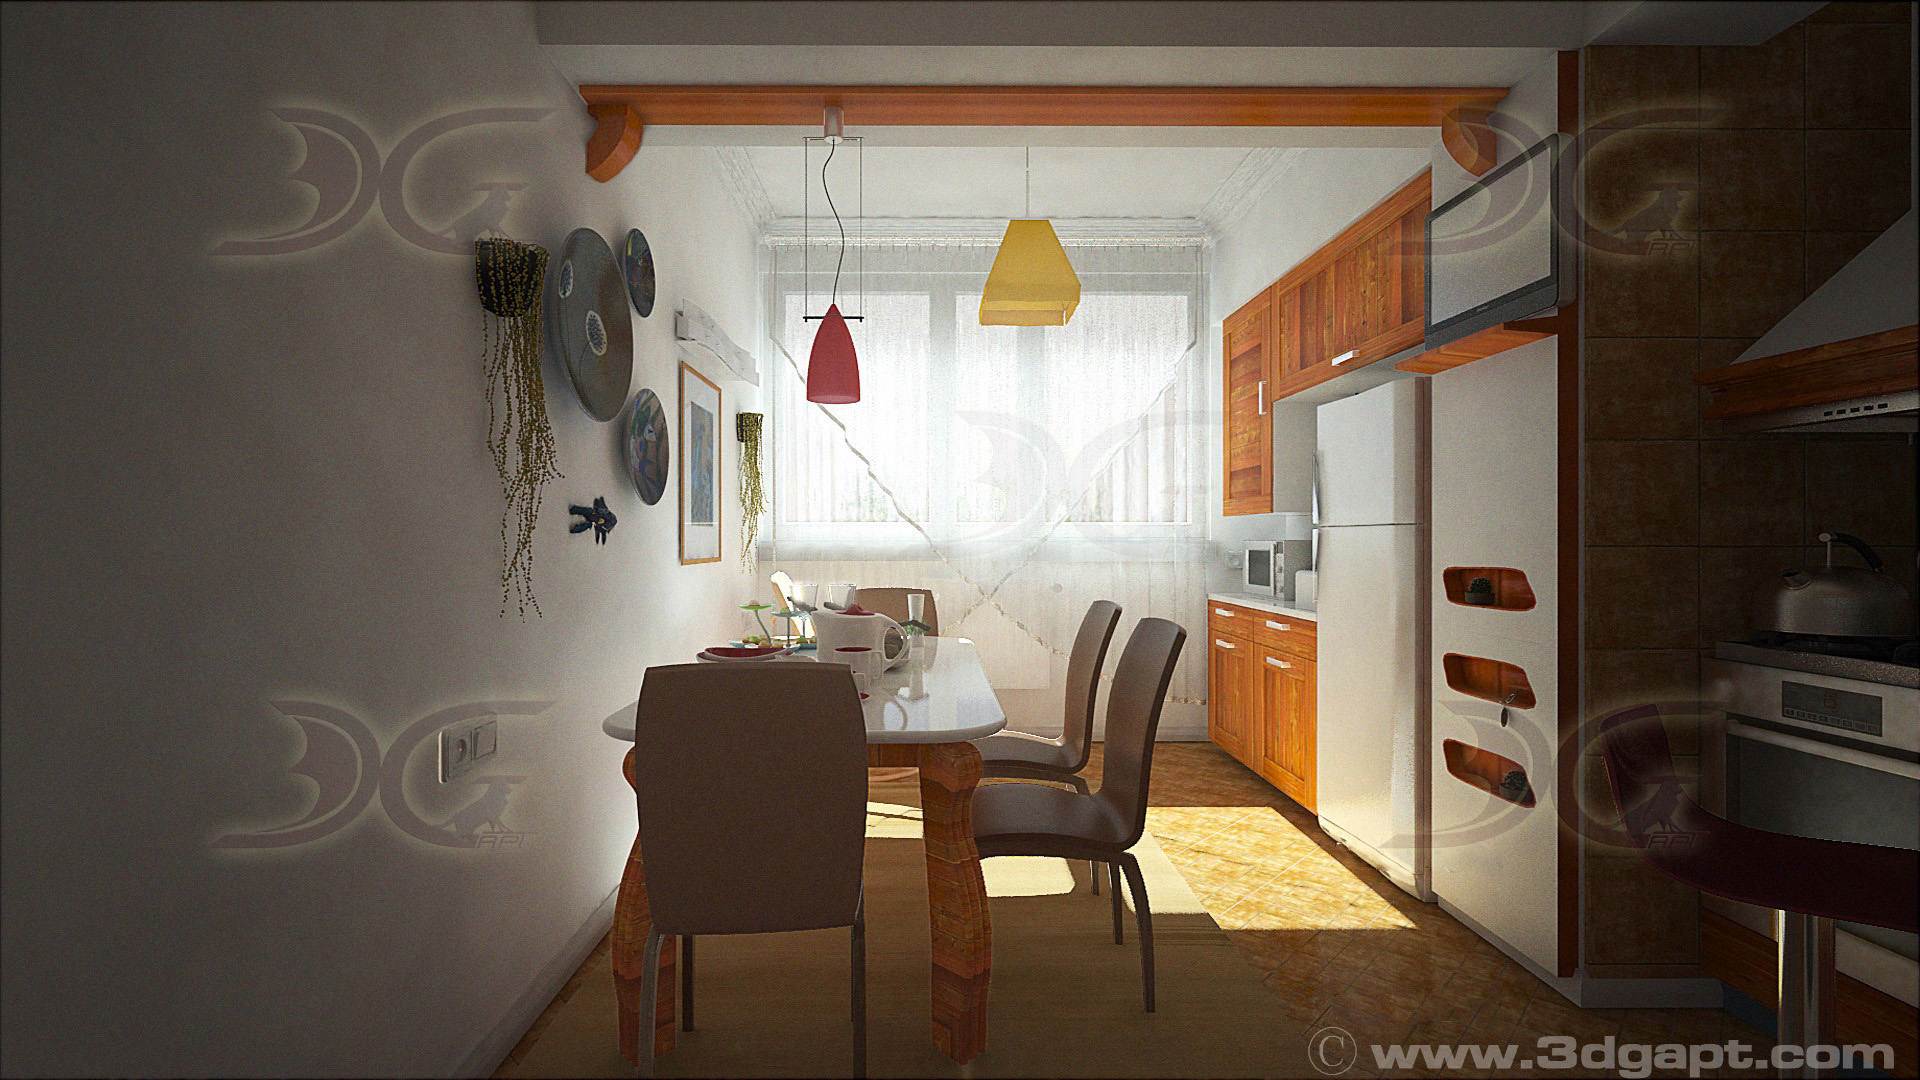 architecture interior kitchen-3versions 24